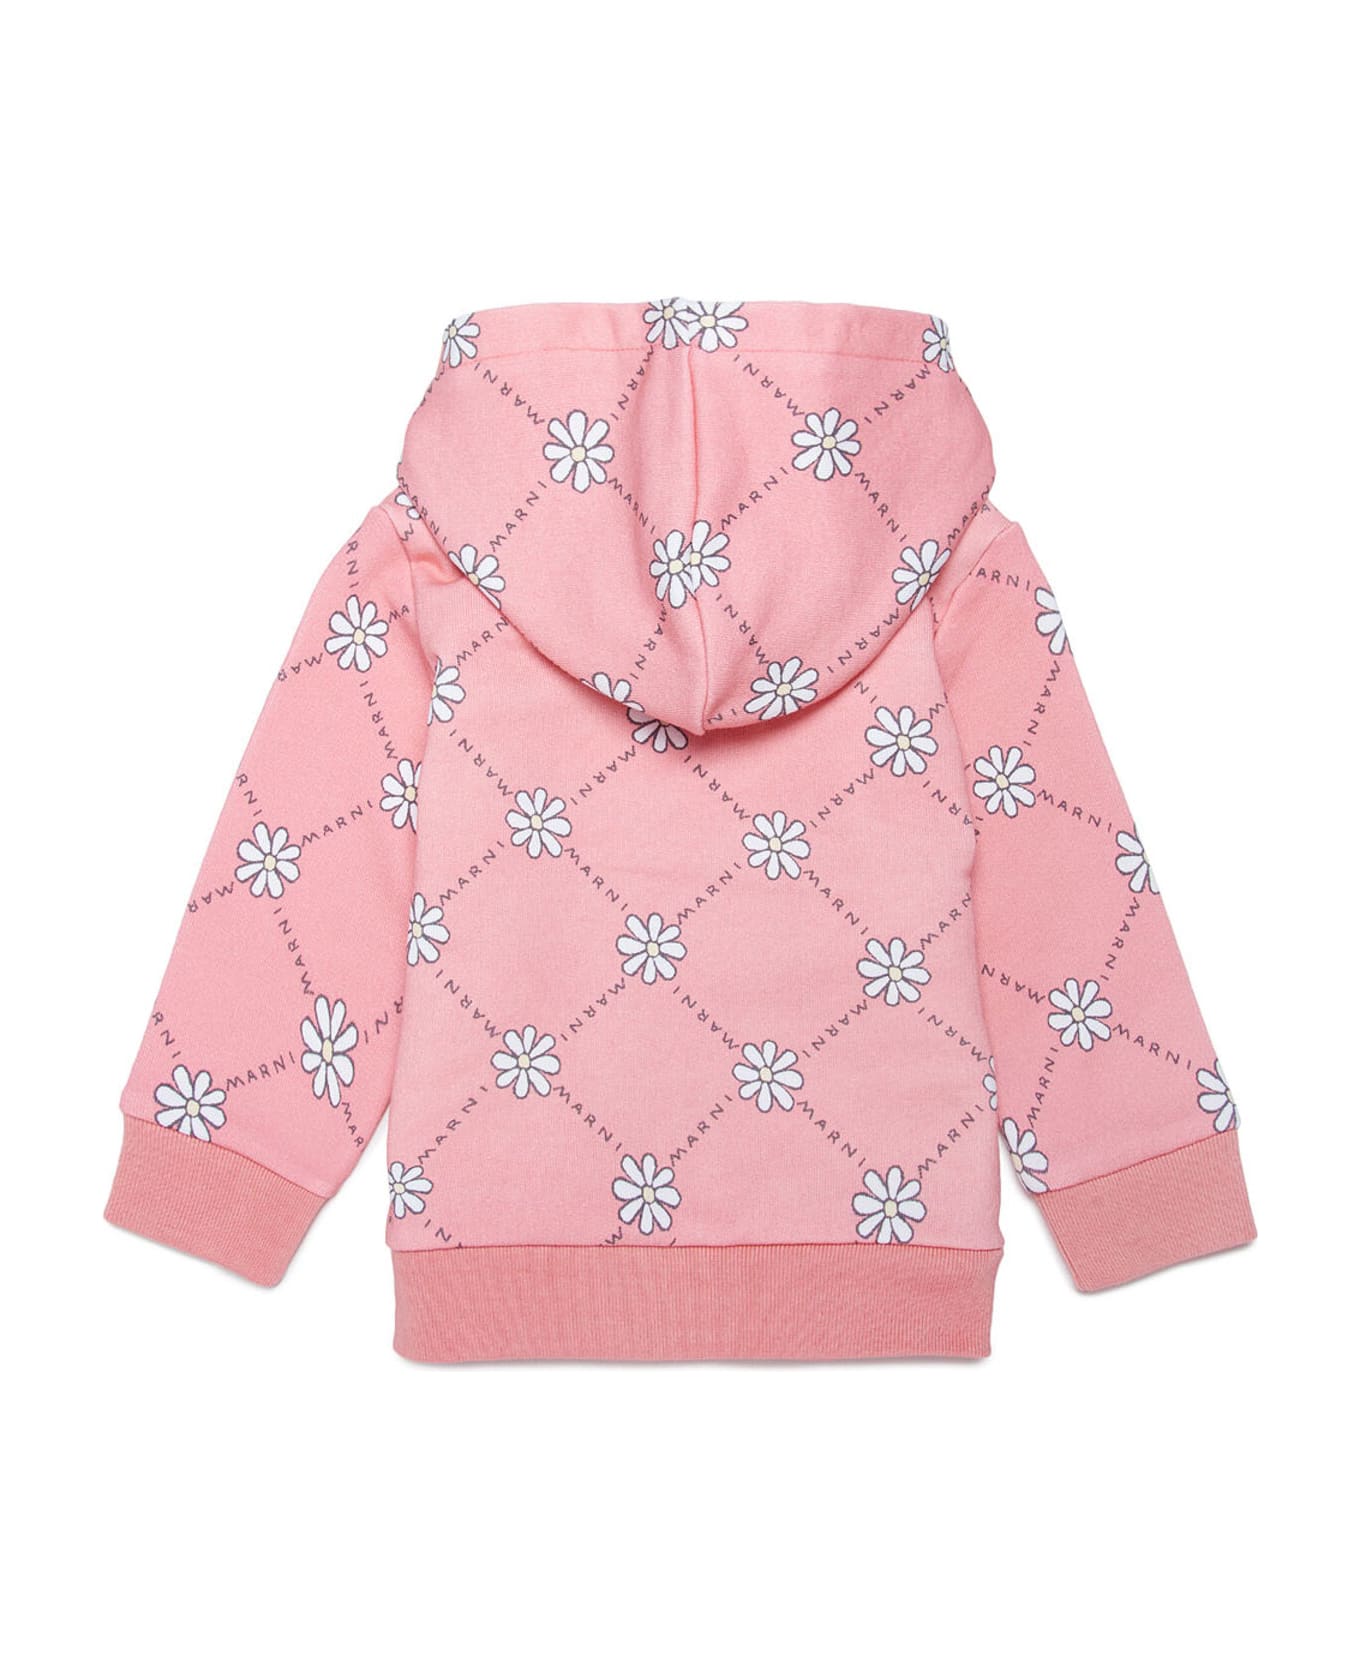 Marni Ms31b Sweat-shirt Marni Peach Pink Cotton Hooded Sweatshirt With Daisy Pattern - Peach blossom